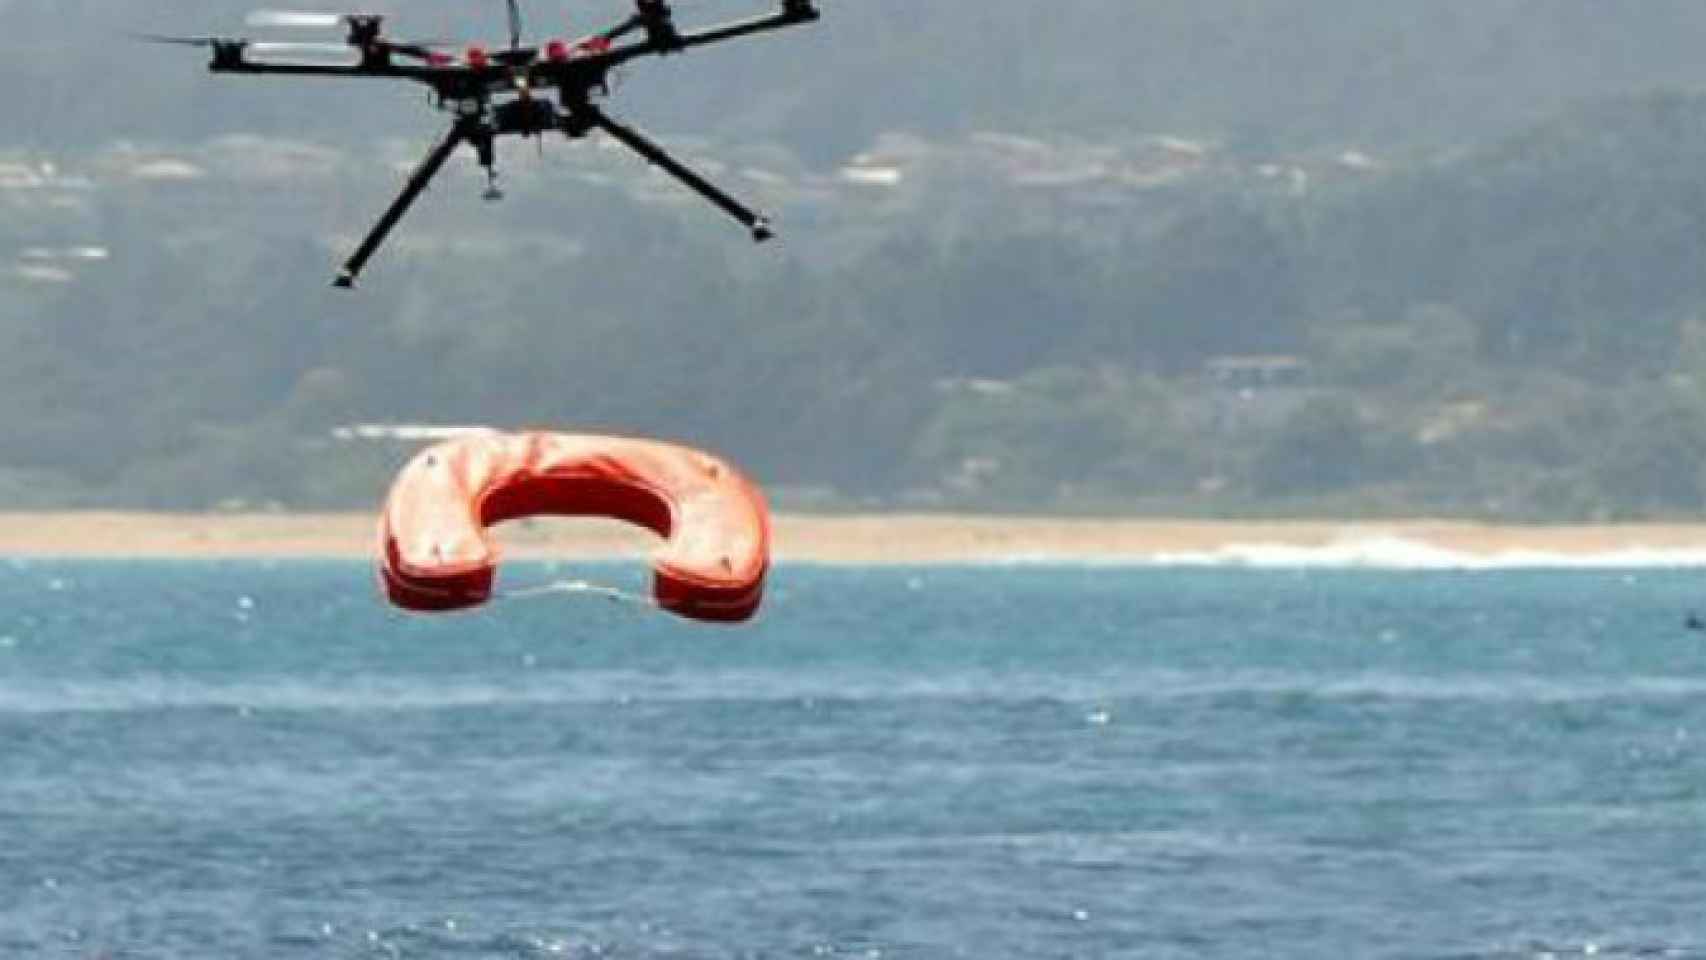 El proyecto piloto de drones socorristas salva 6 vidas en las playas de la Comunidad Valenciana